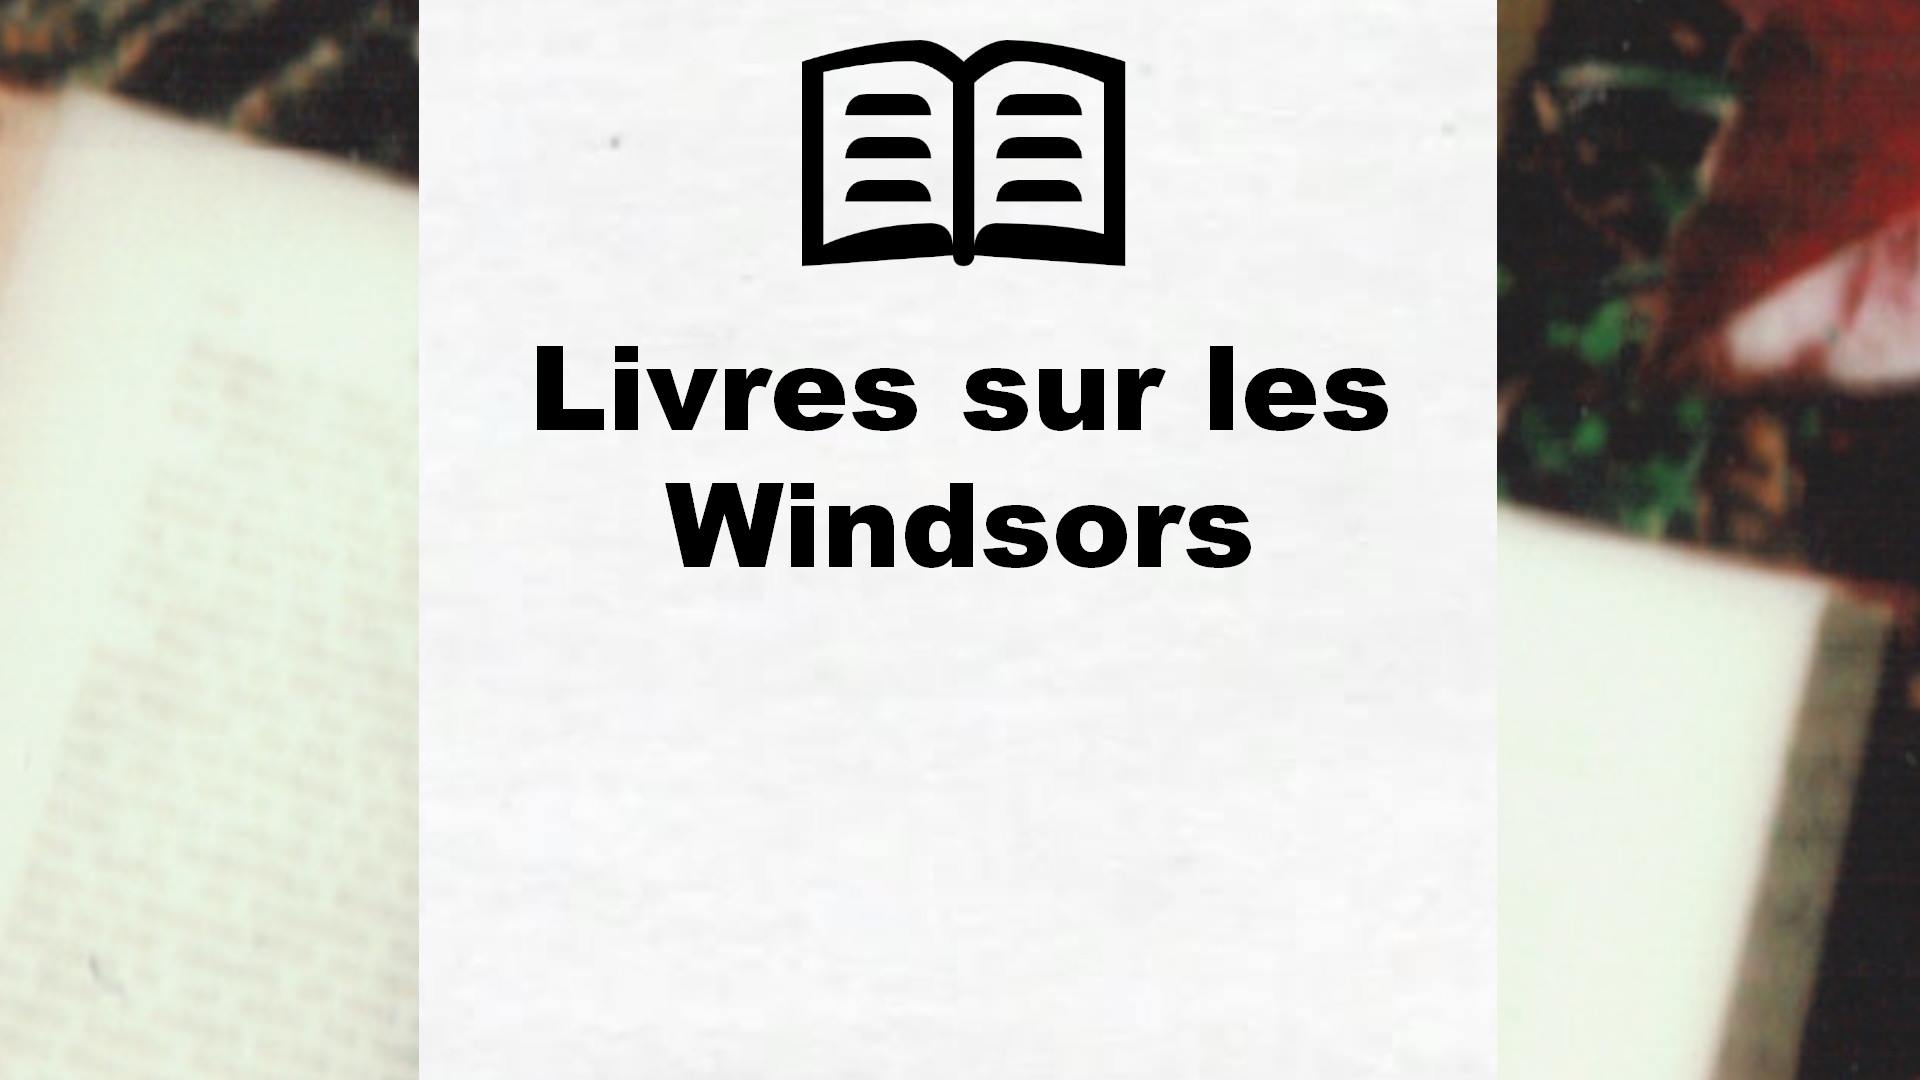 Livres sur les Windsors